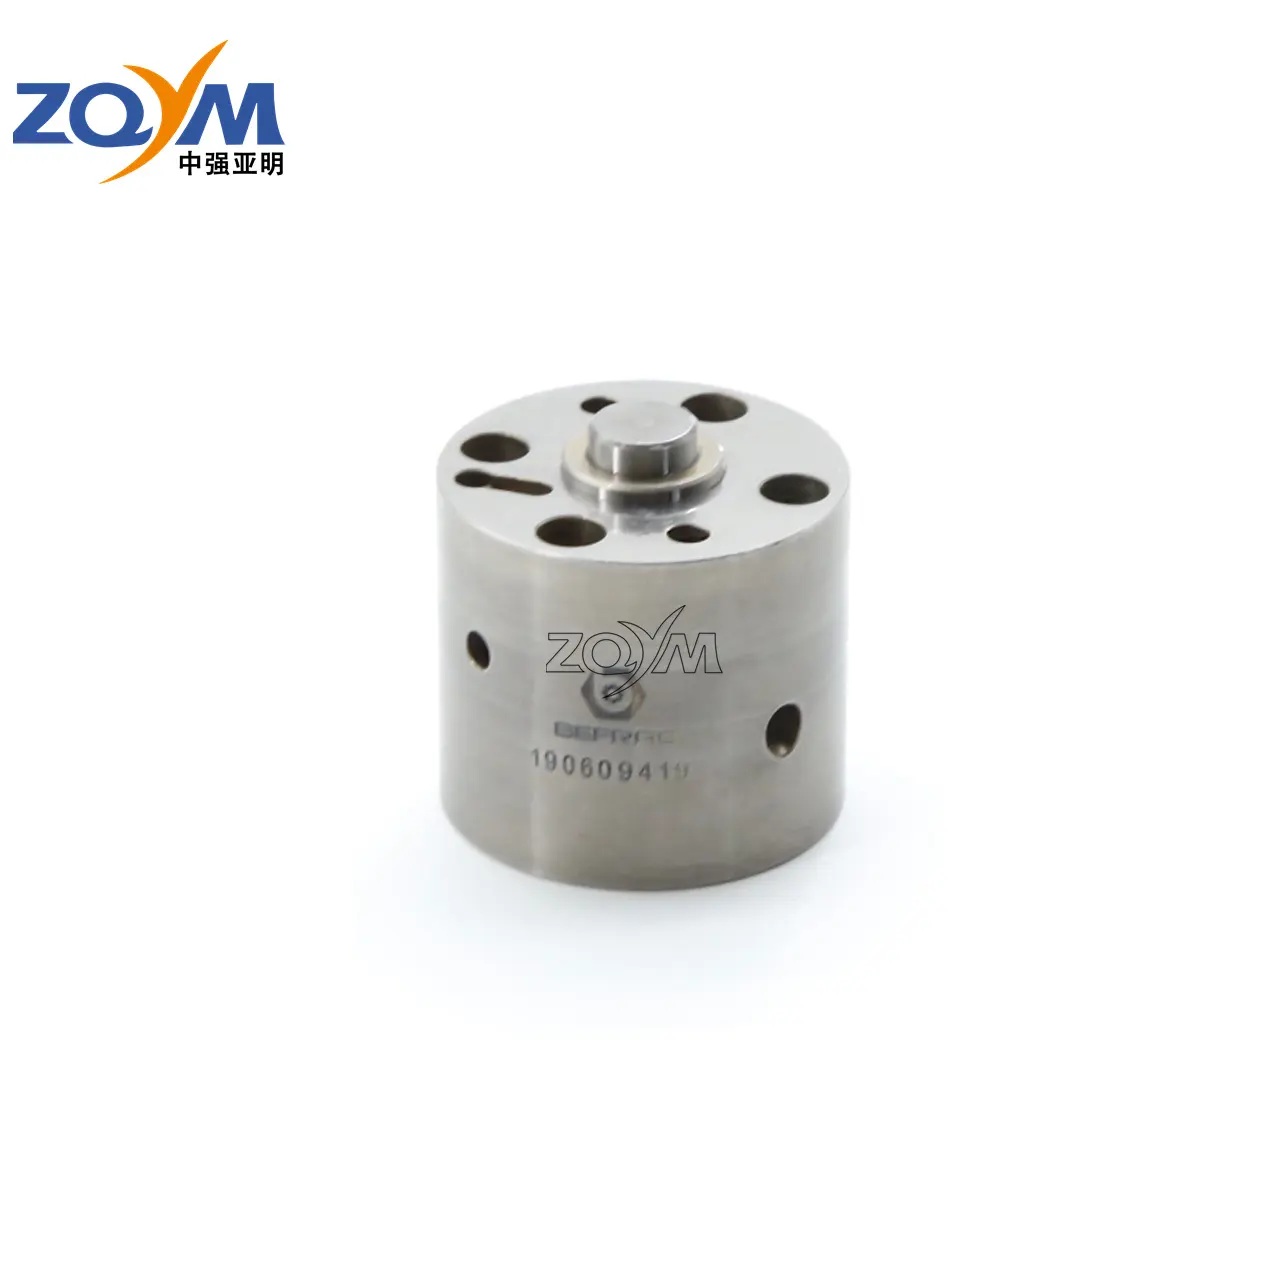 ZQYM c7c9 válvula de solenoide Válvula de control de aceite émbolo Asamblea c7/c9 inyector común carril inyector piezas actuador kit para gato